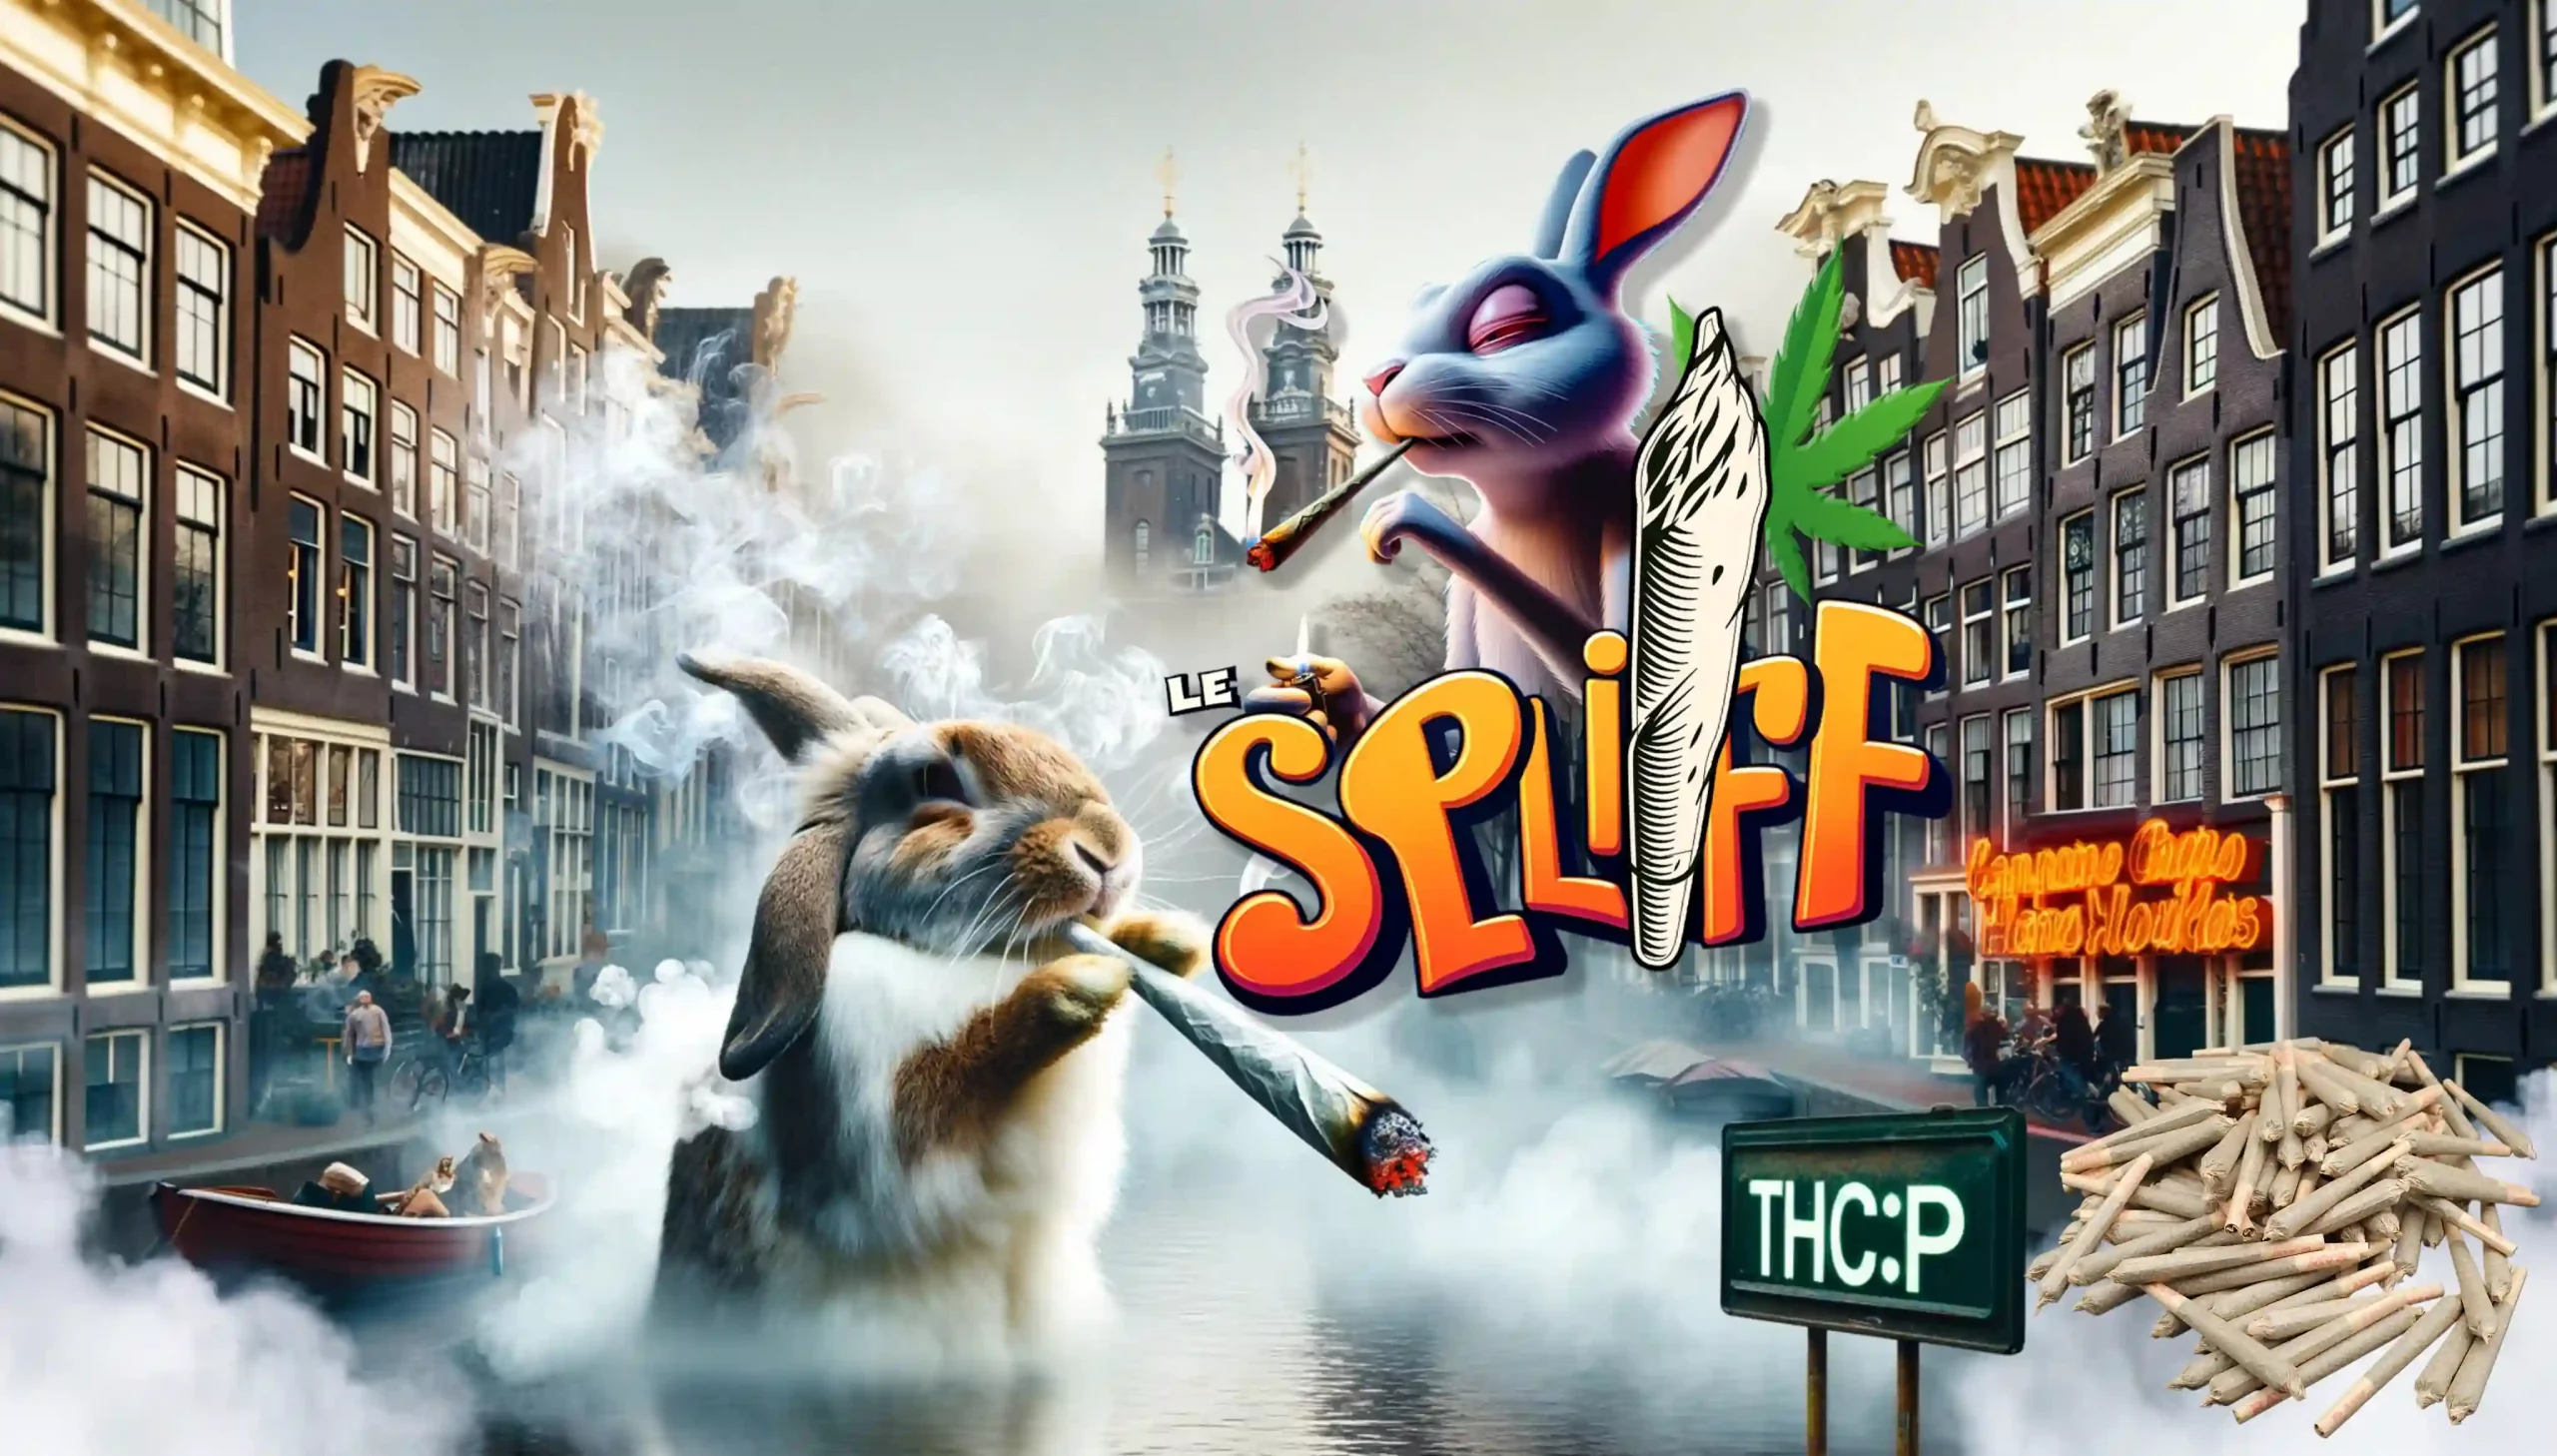 Publicité colorée pour 'Le Spliff' pré-roulés THCP avec un lapin animé fumant, sur fond de canaux d'Amsterdam et d'architecture néerlandaise, avec des joints éparpillés et un panneau 'THC:P'.